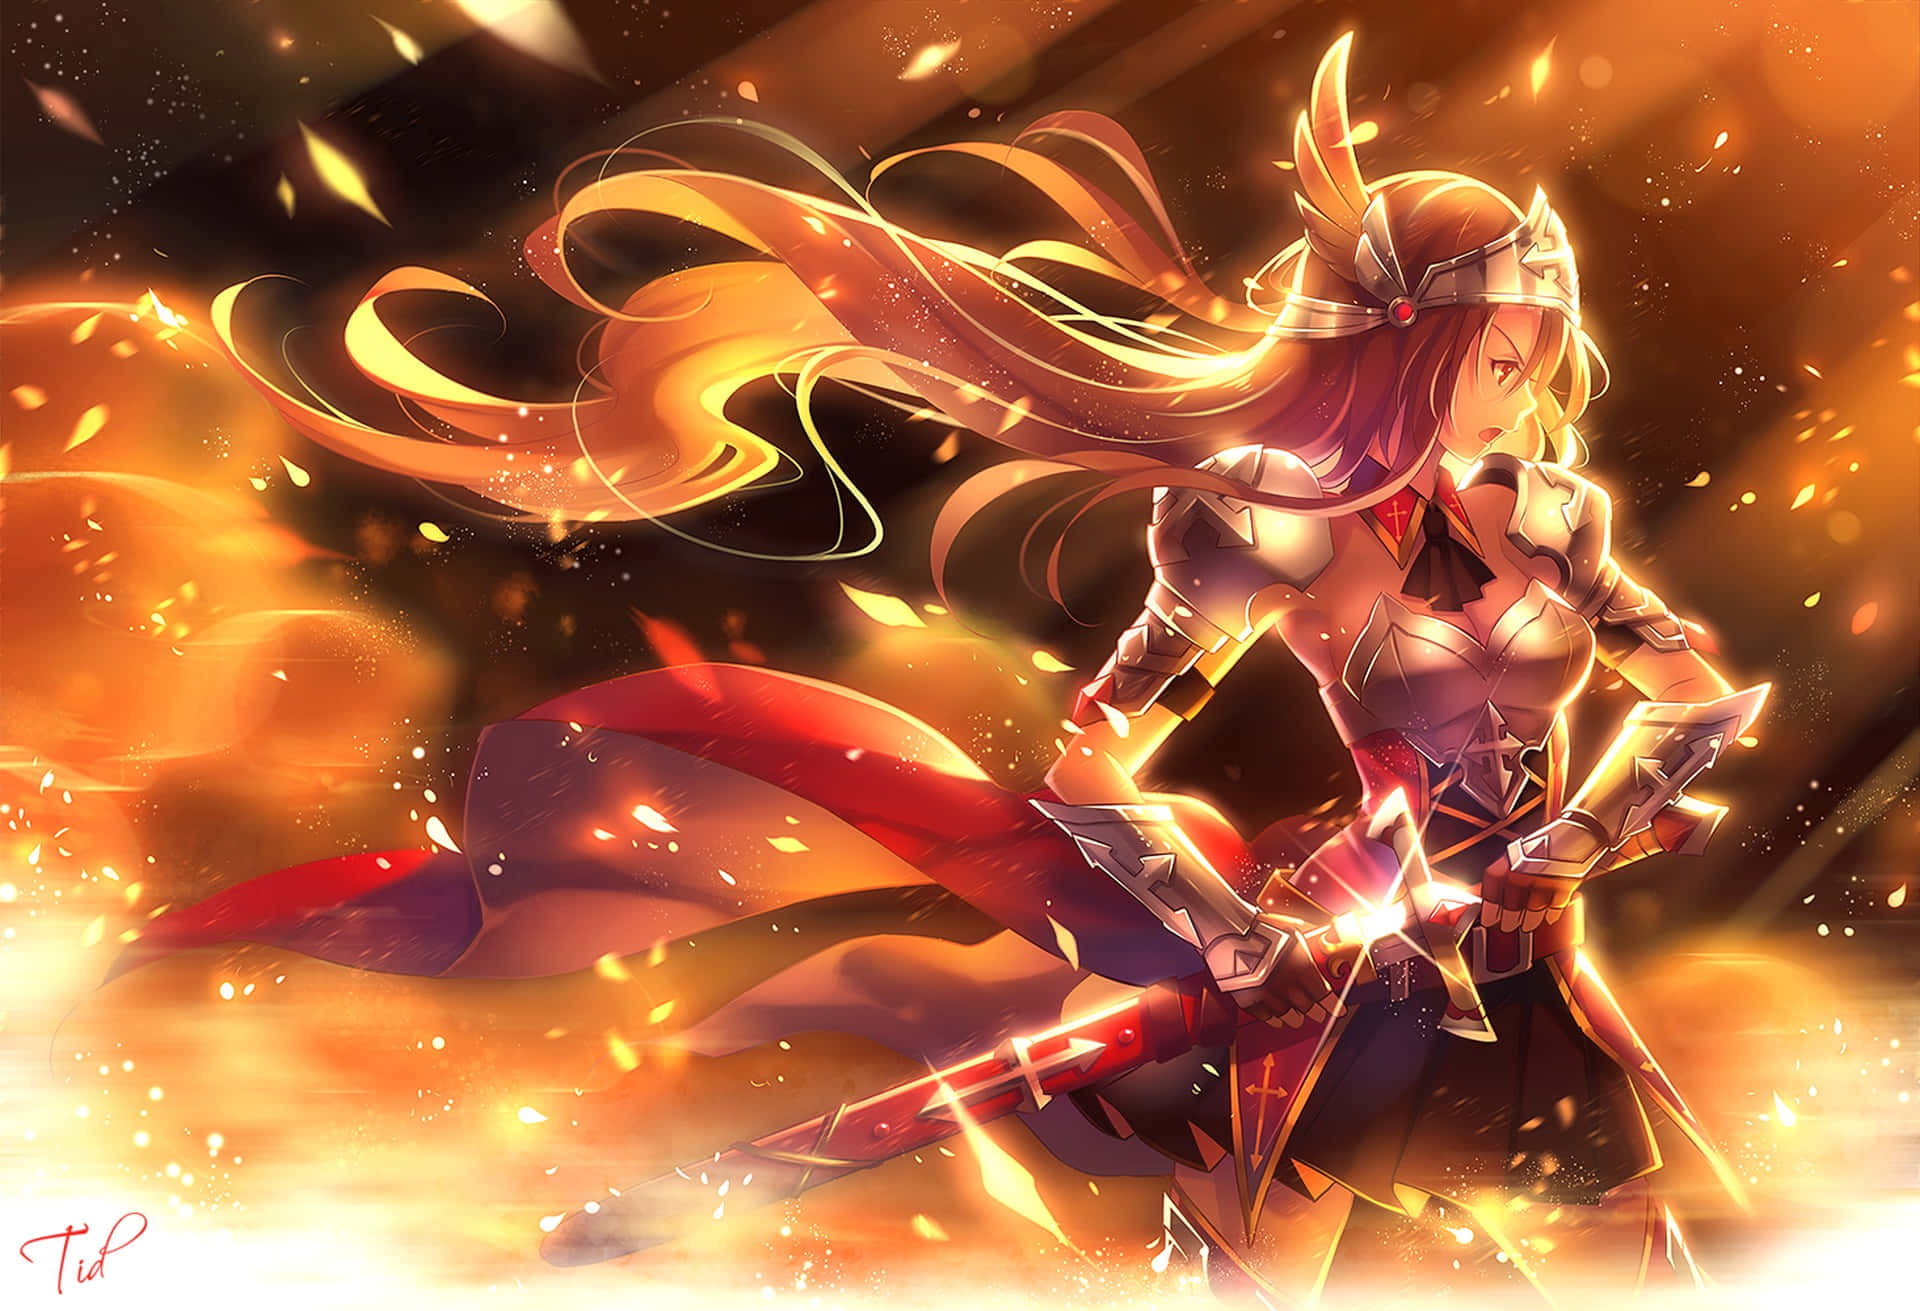 Admirala Impresionante Belleza De Anime Fire. Fondo de pantalla